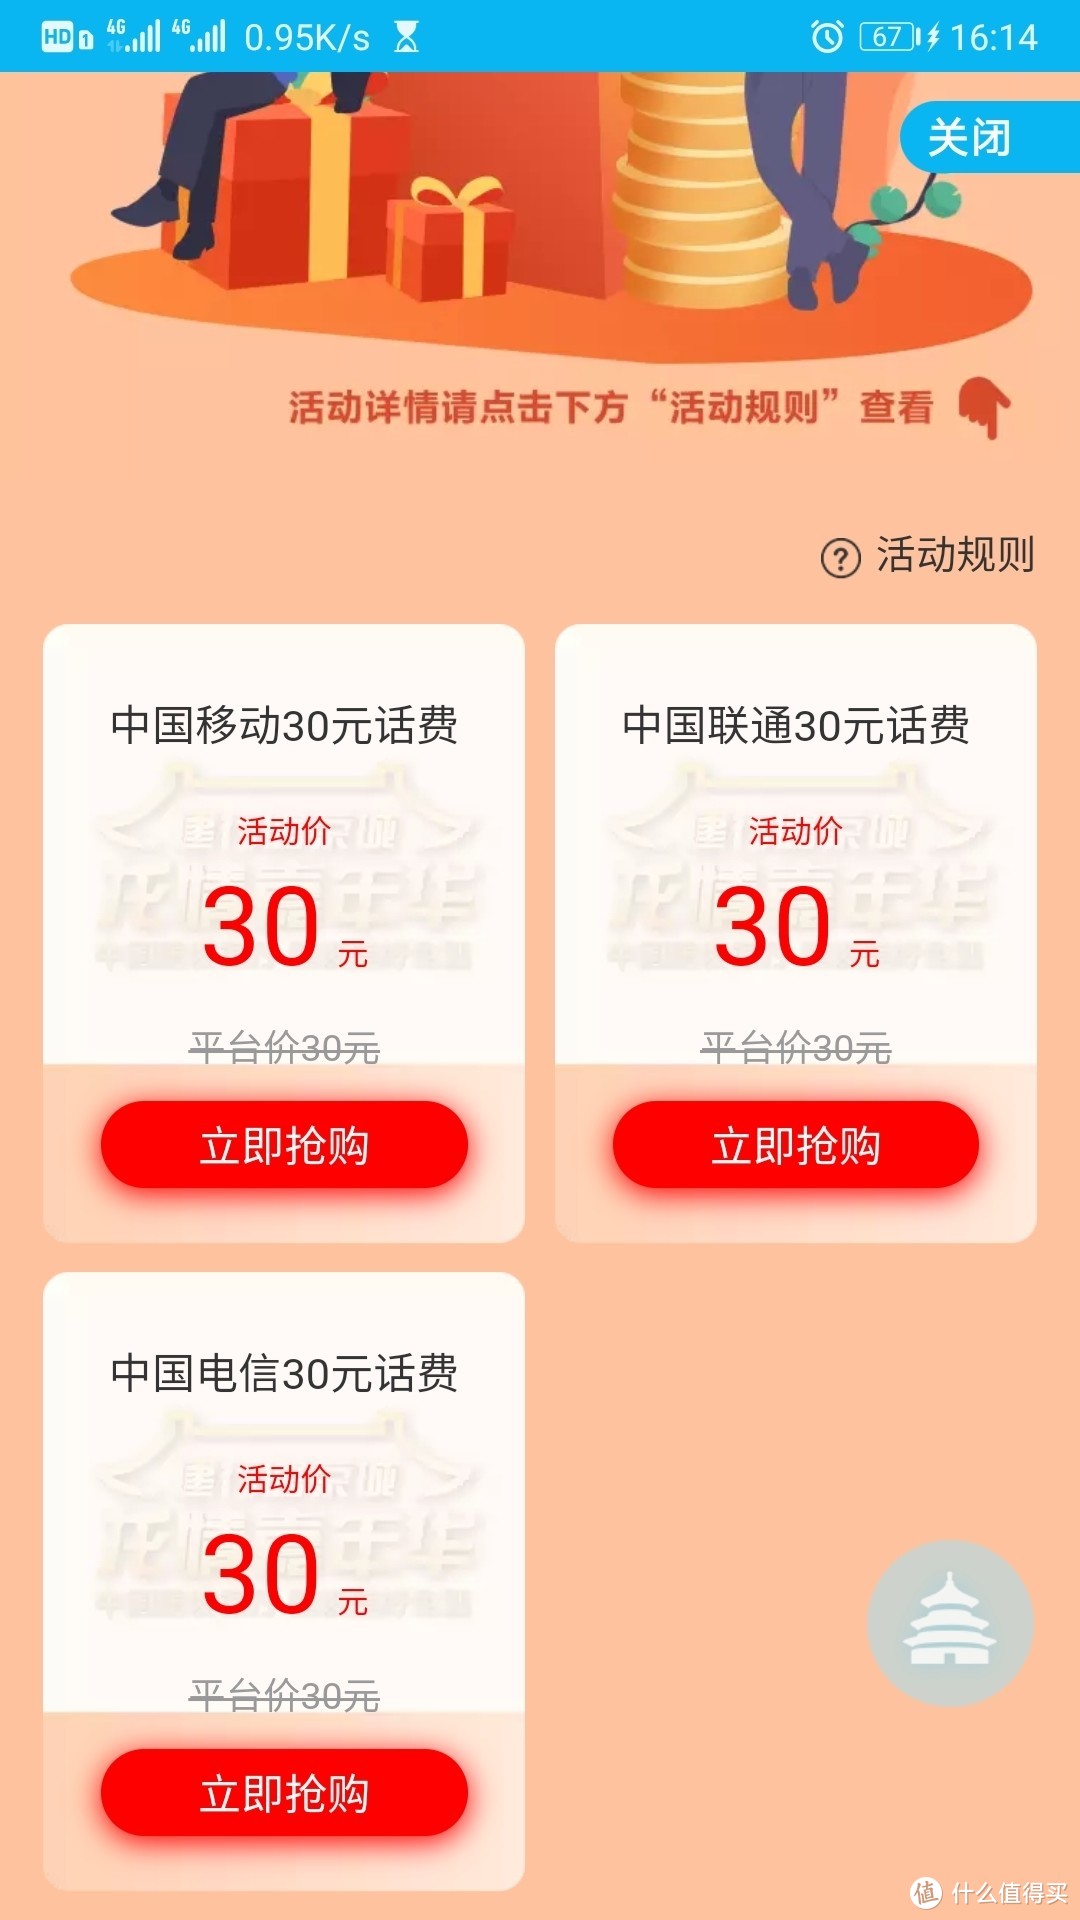 建设银行App，信用卡1元购30元话费，仅限北京